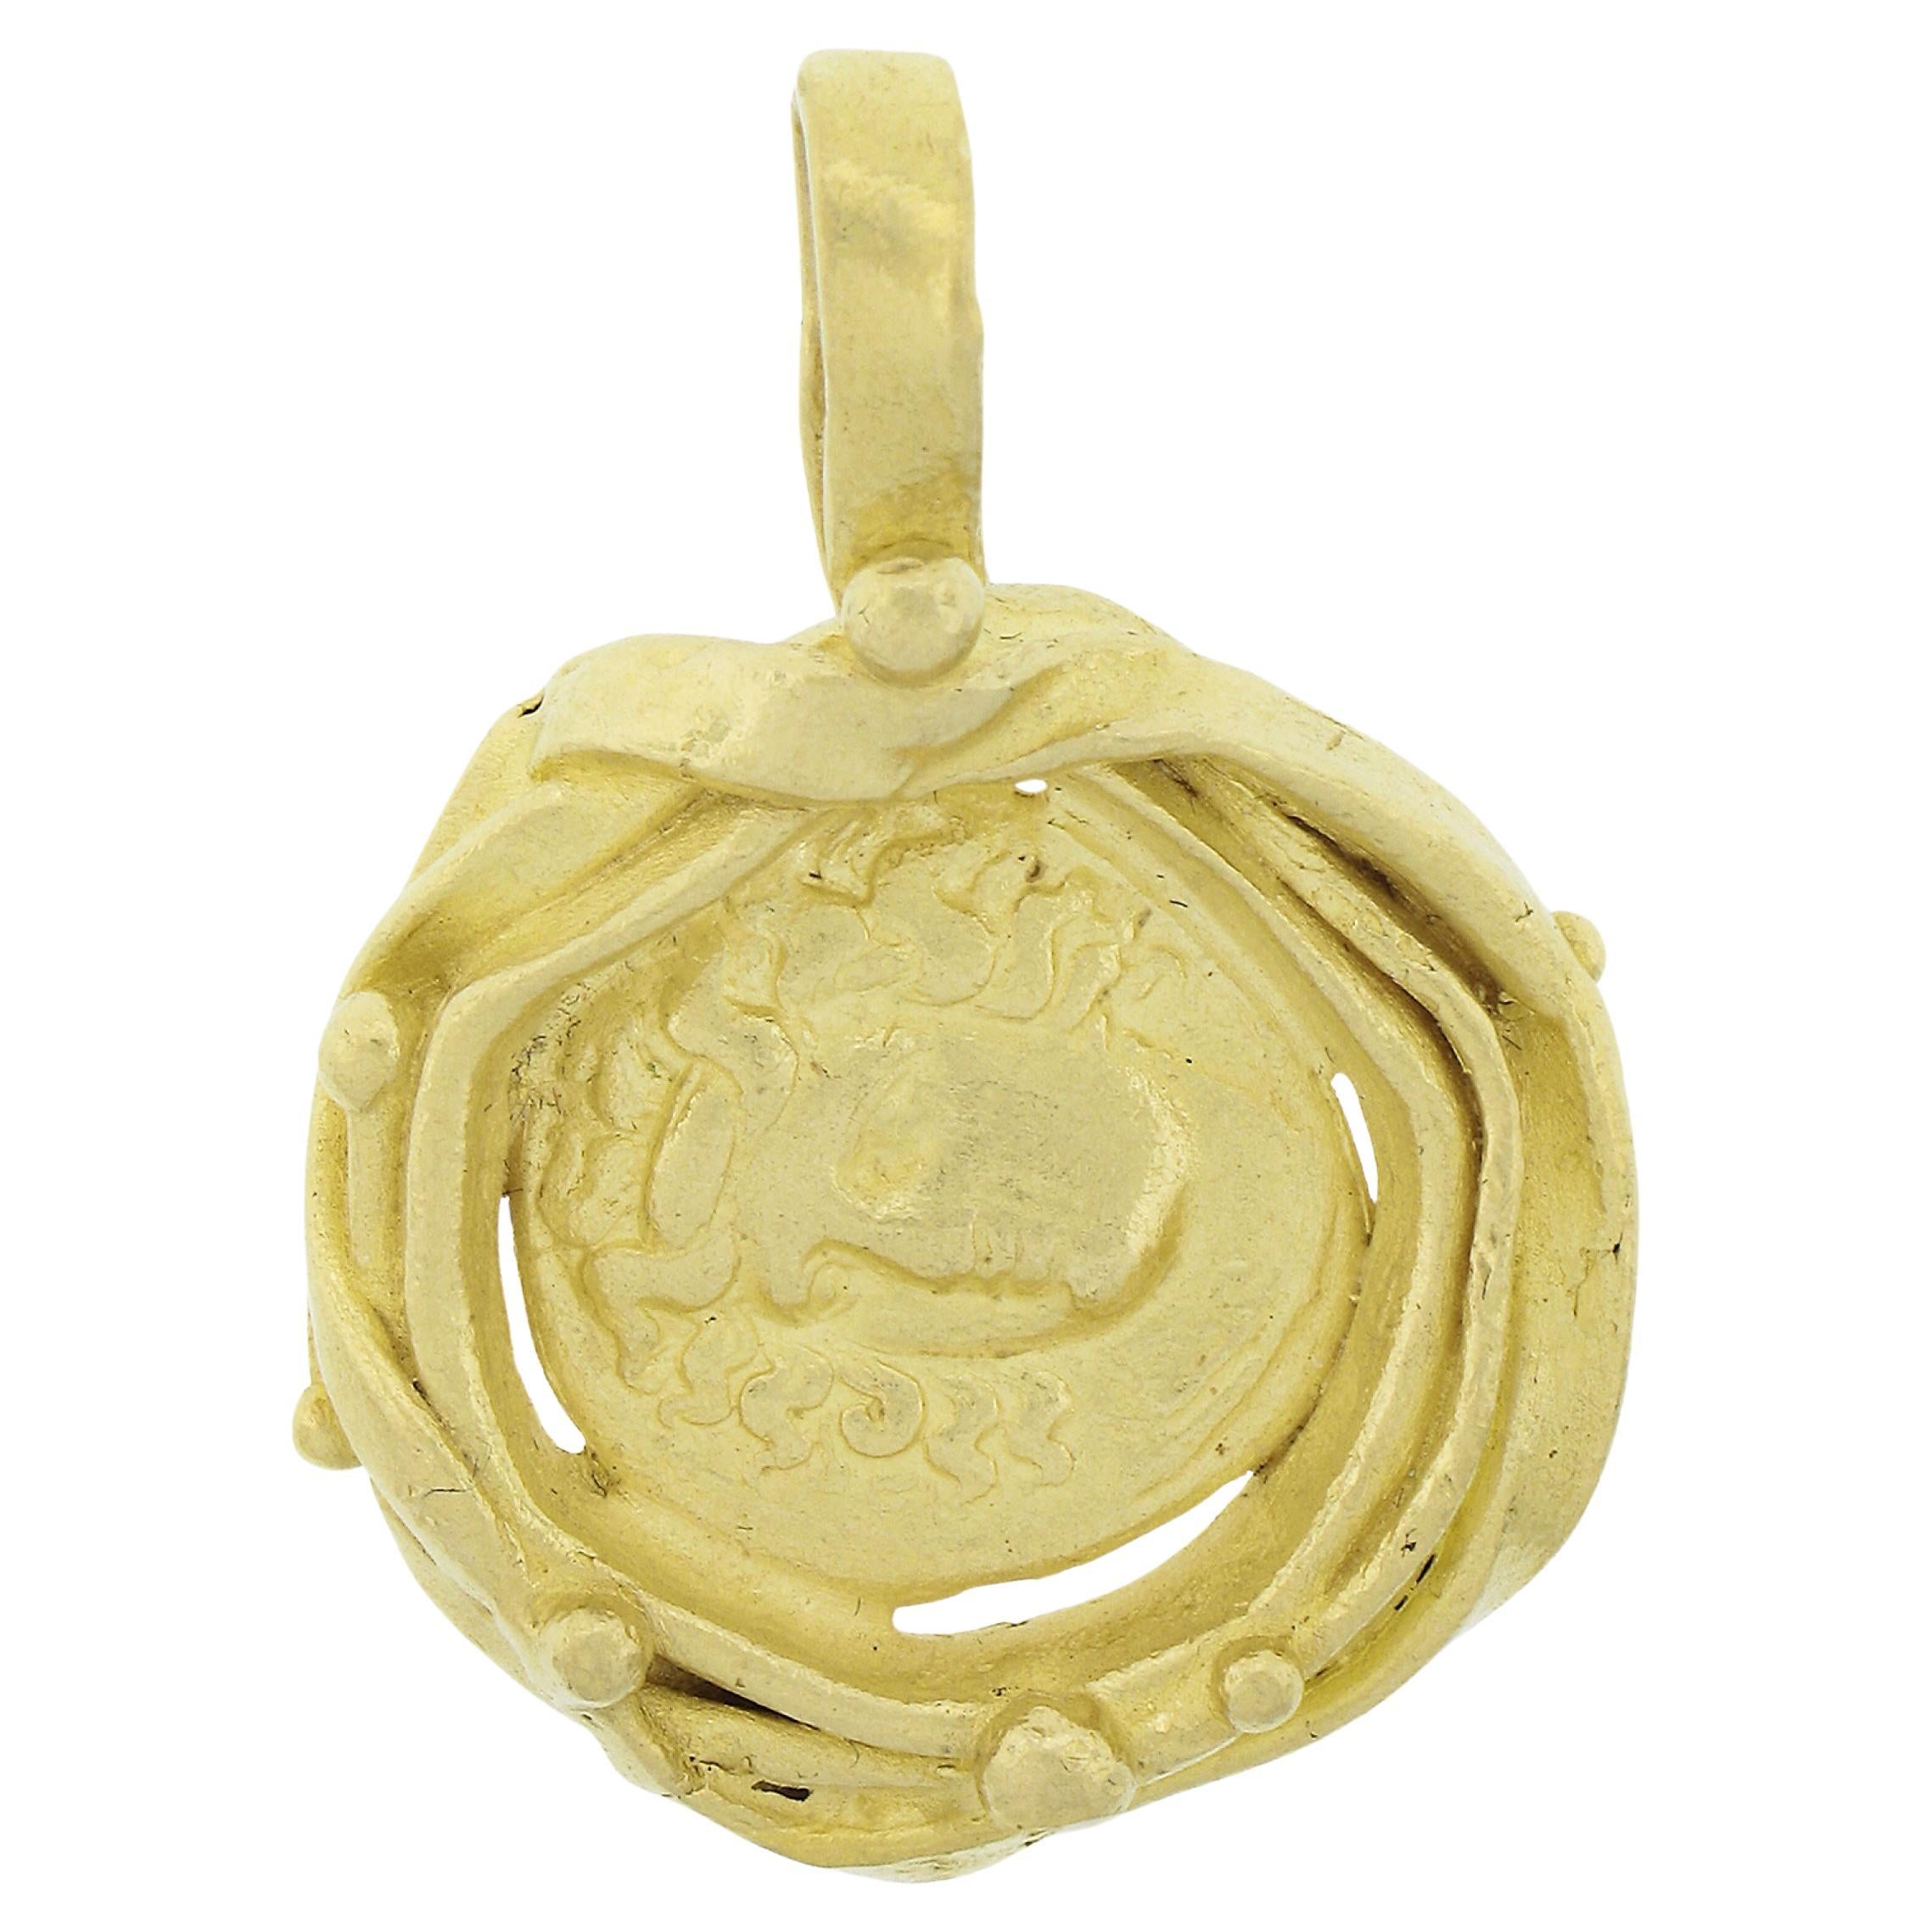 Denise Roberge 22k Gelbgold Antike Münze Texturierter & Perlenarbeit Charm-Anhänger